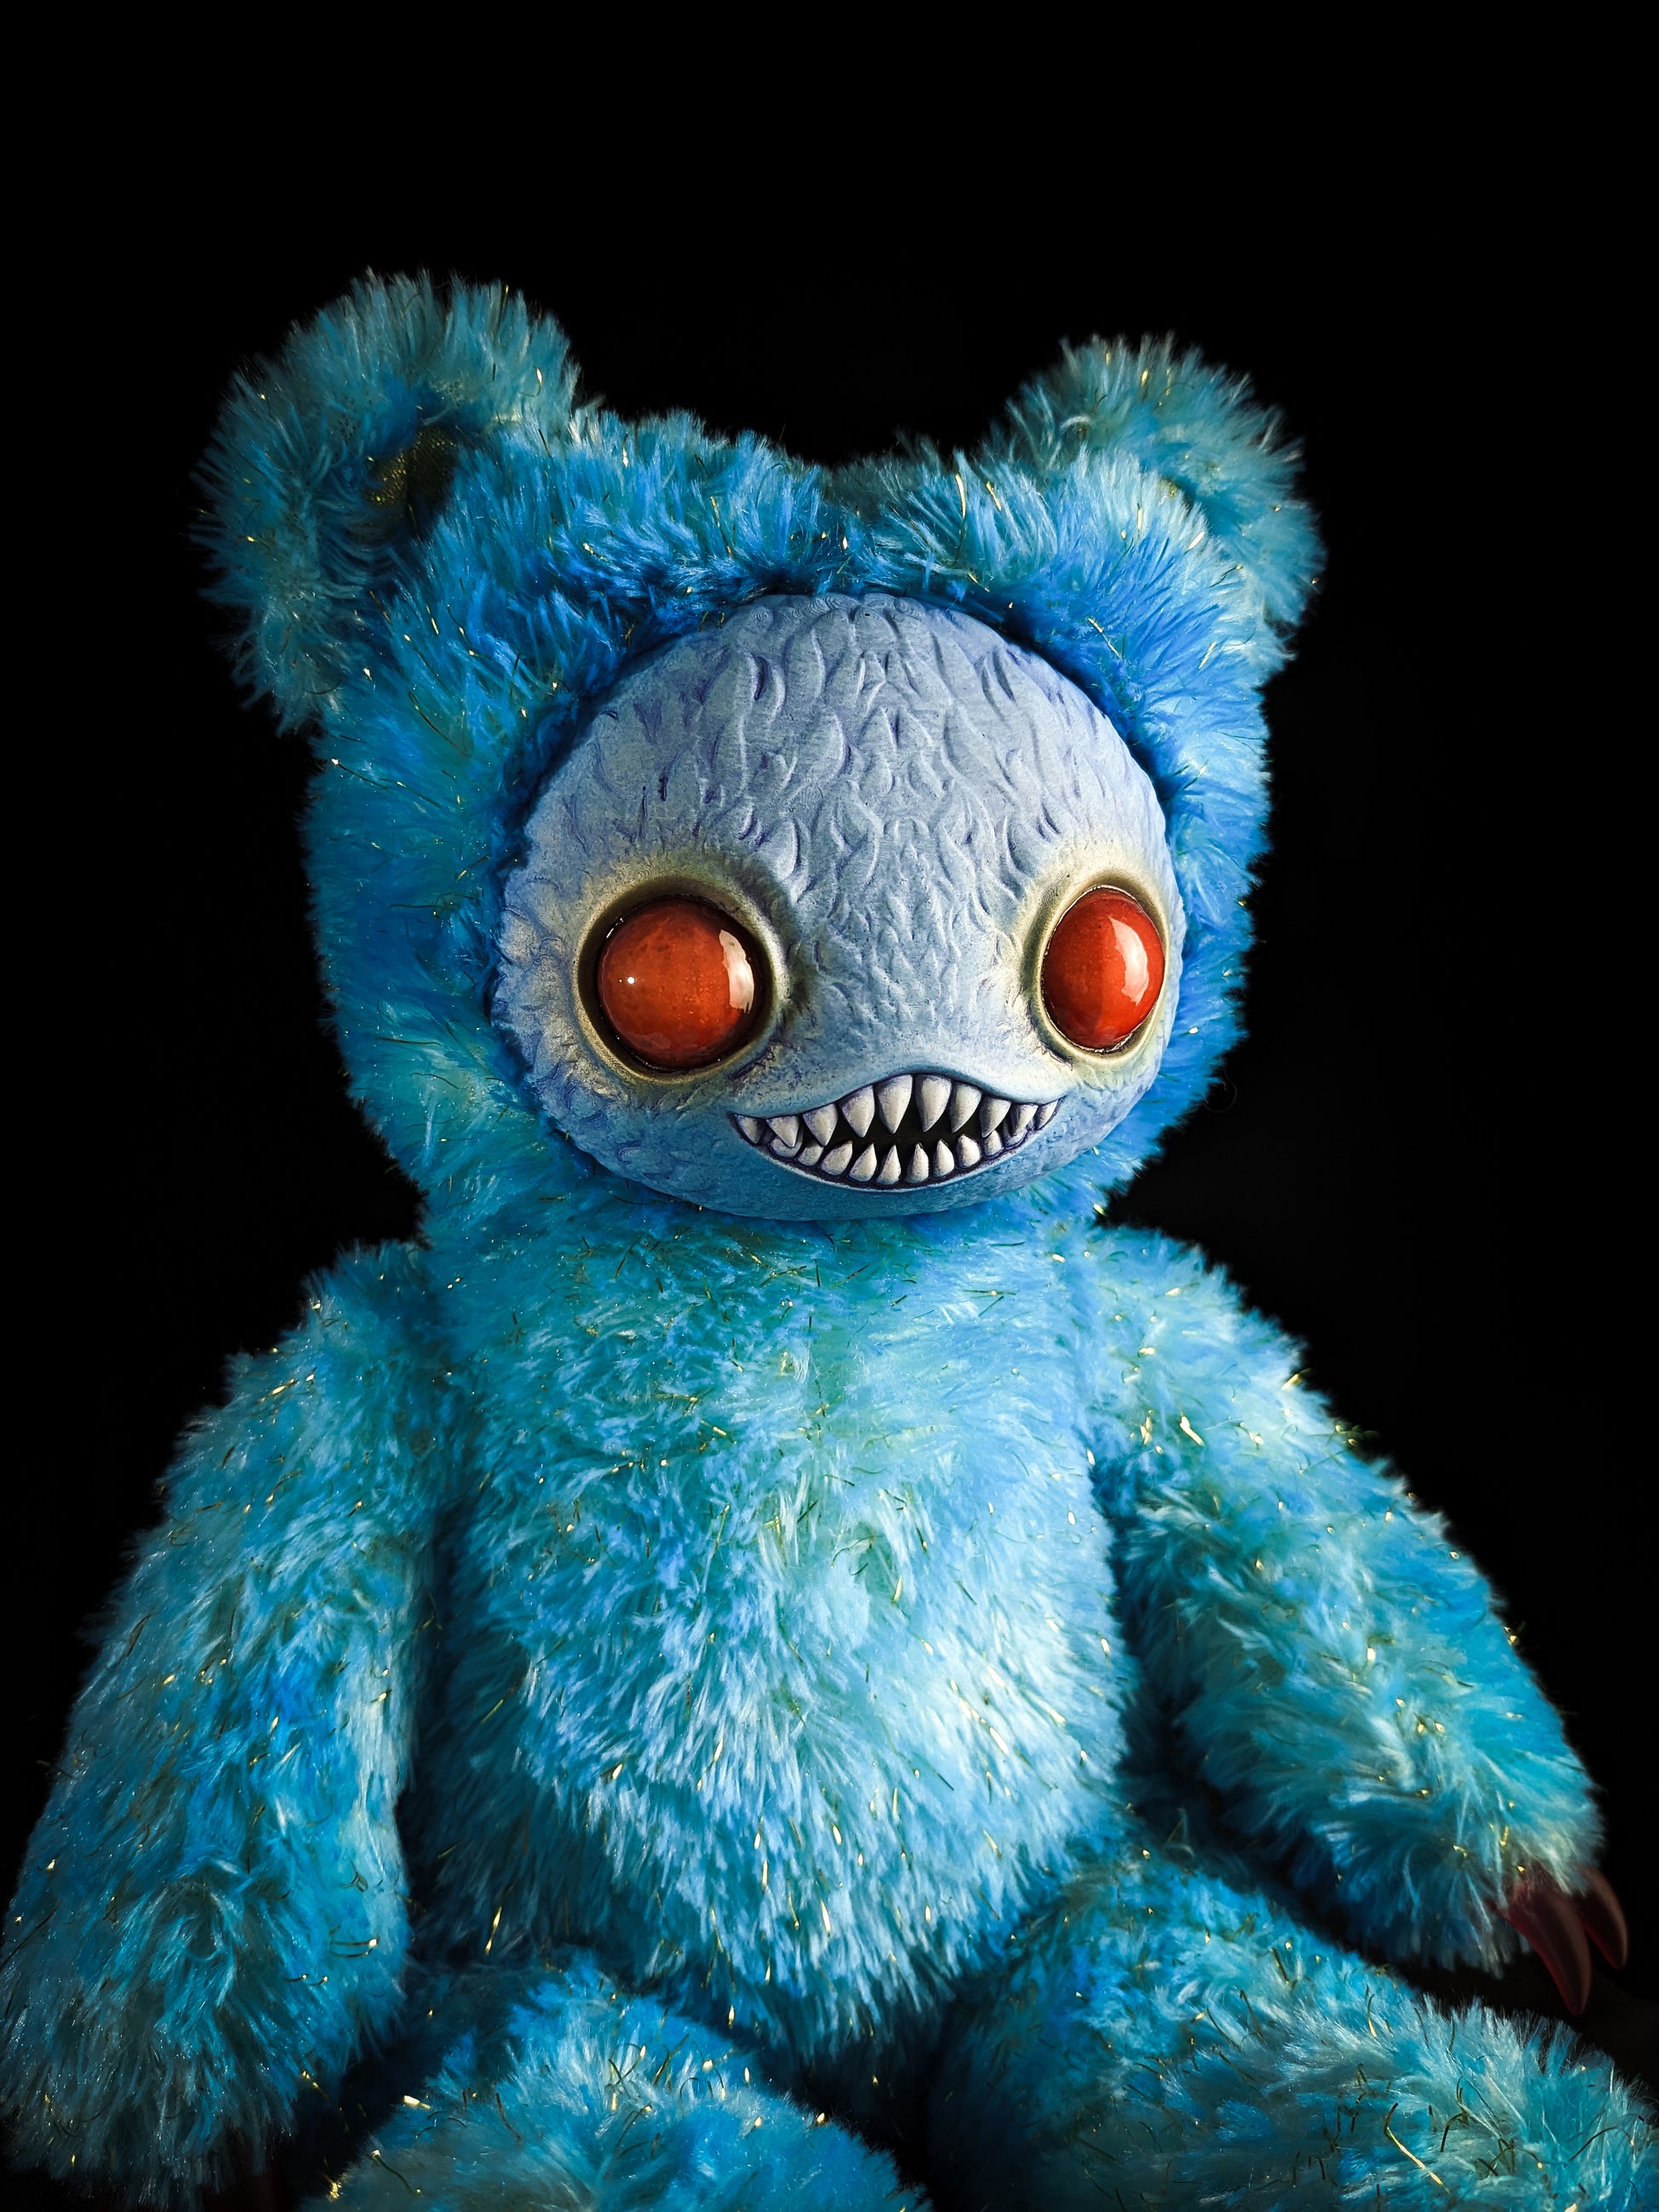 Nightfall Whispers: Ningen - Handmade Blue Creepy Cute Monster Art Doll Plush Toy for Gothic Goddesses